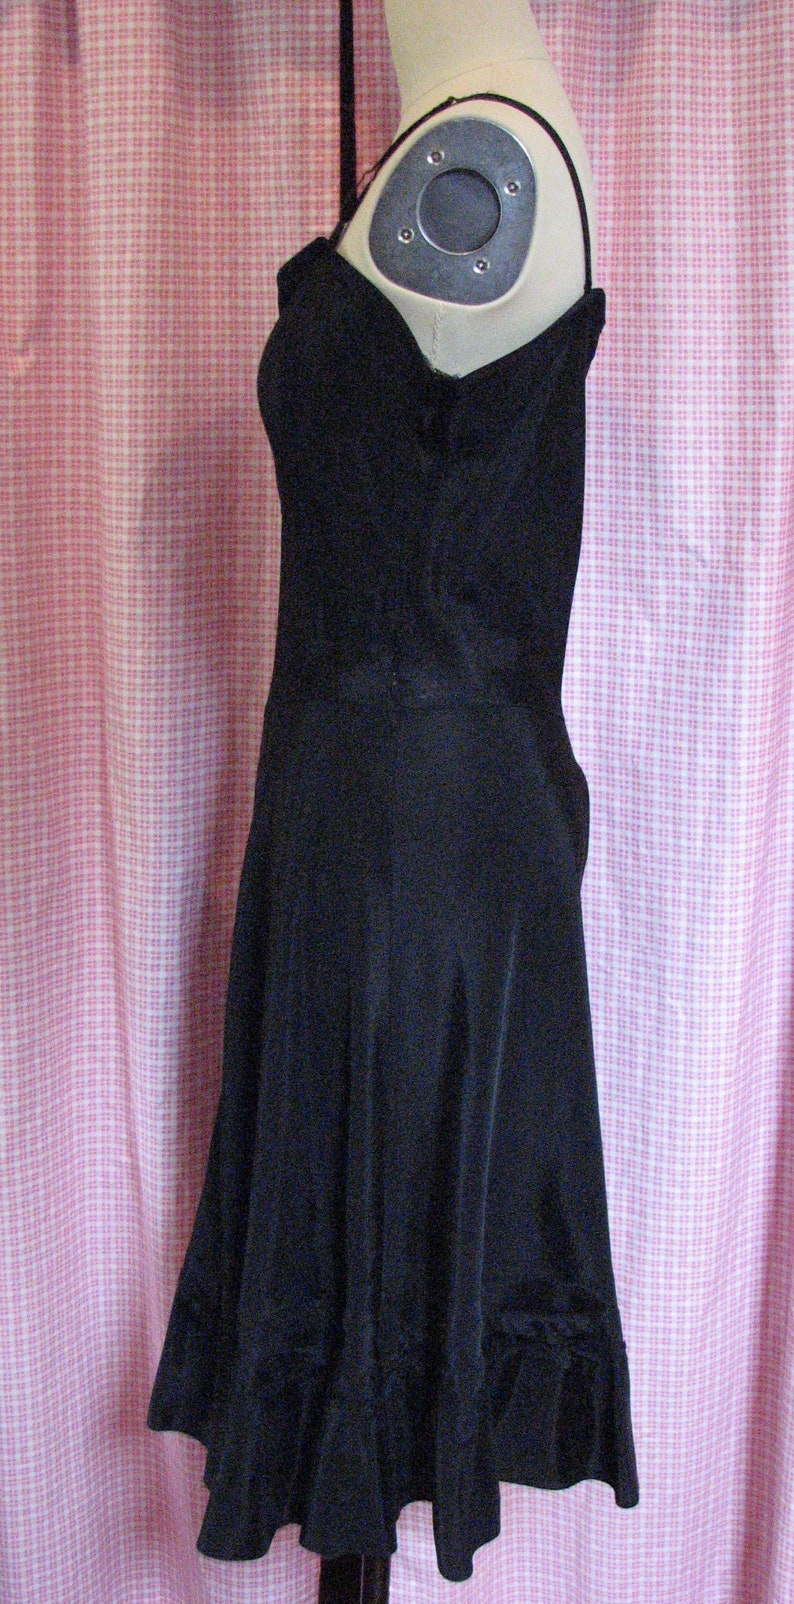 Vintage 1930's/1940's Black Satin Dress or Under Dress - Etsy